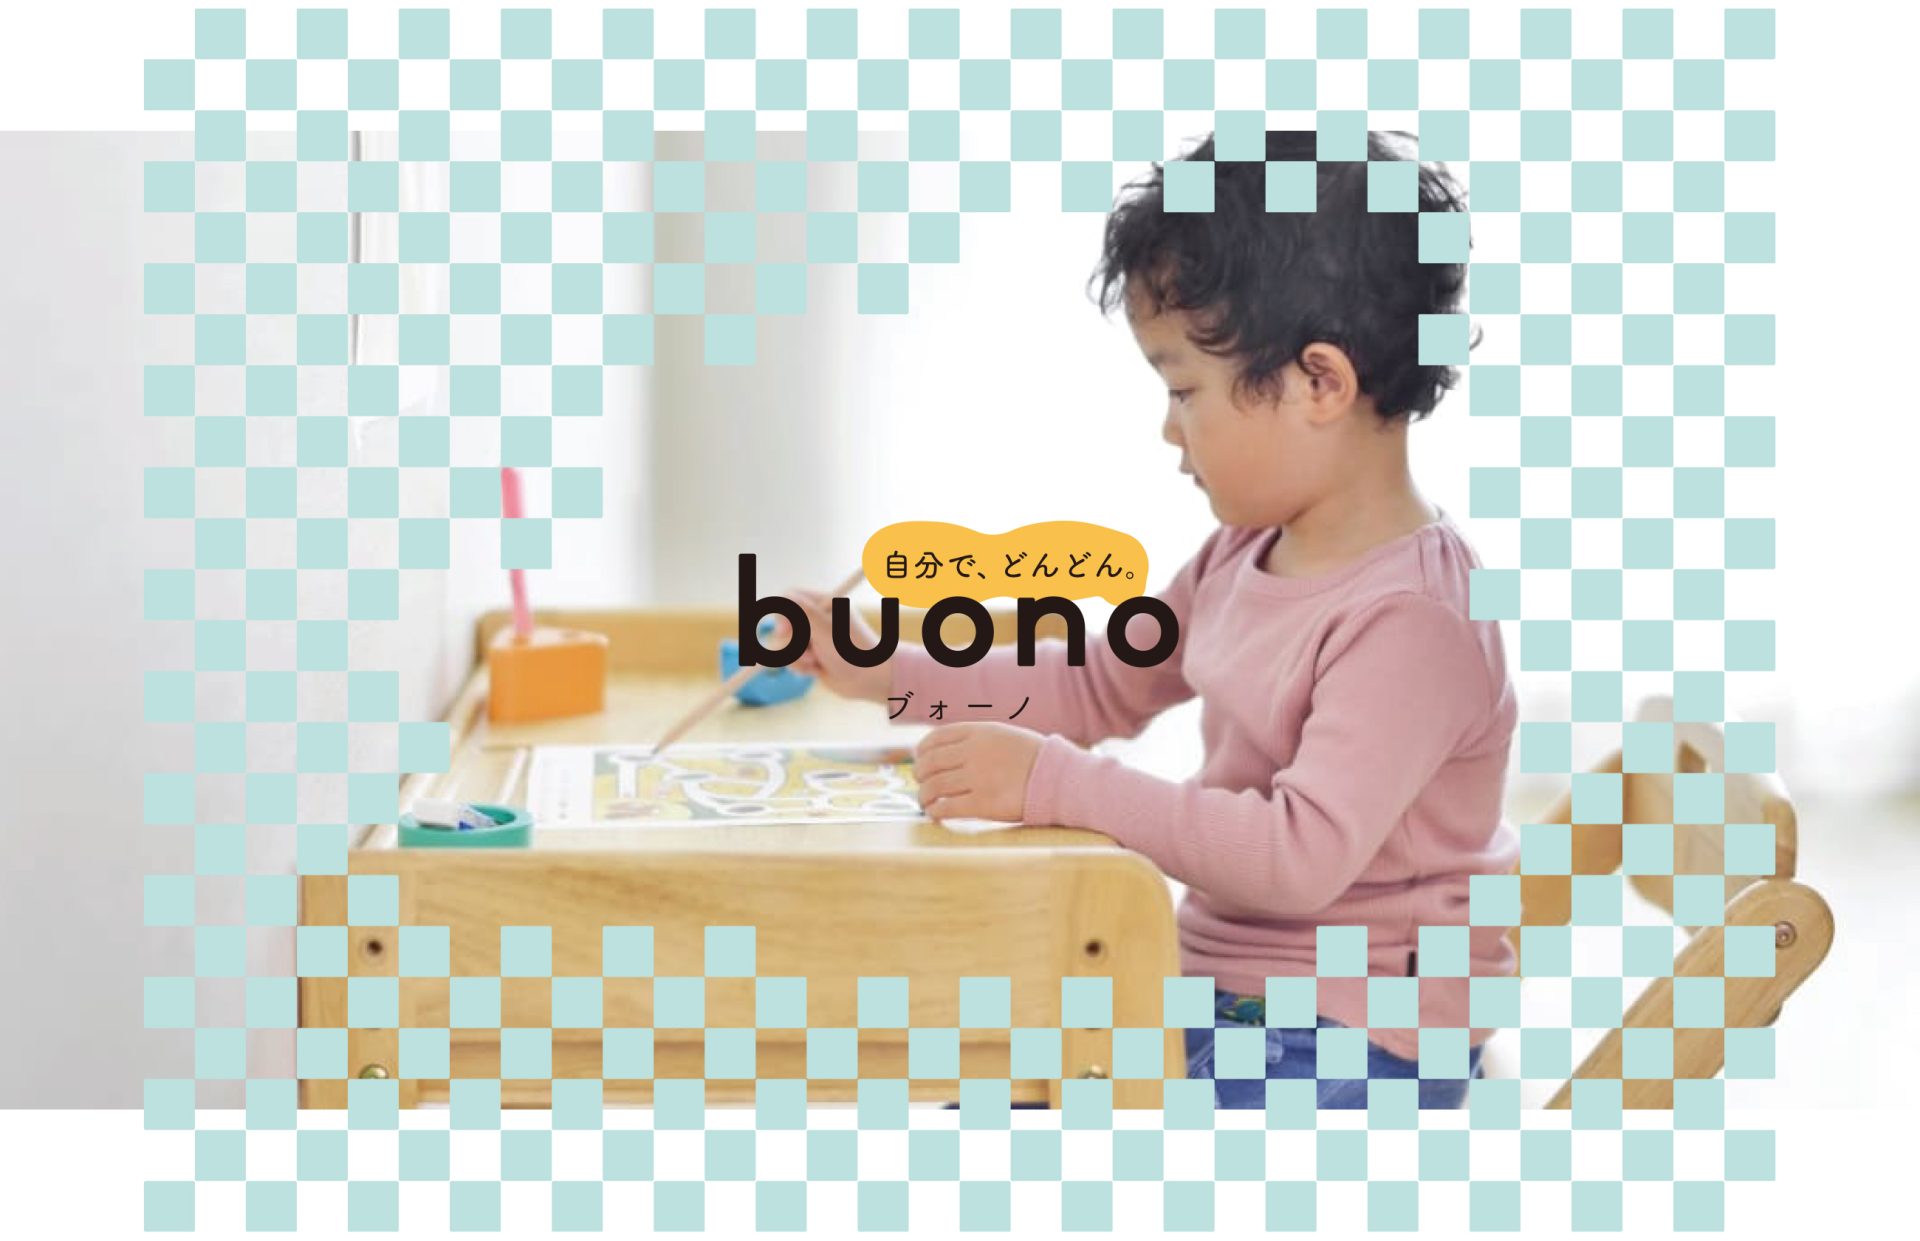 子どもの自立を促す子ども家具シリーズ「ブォーノ3」発売